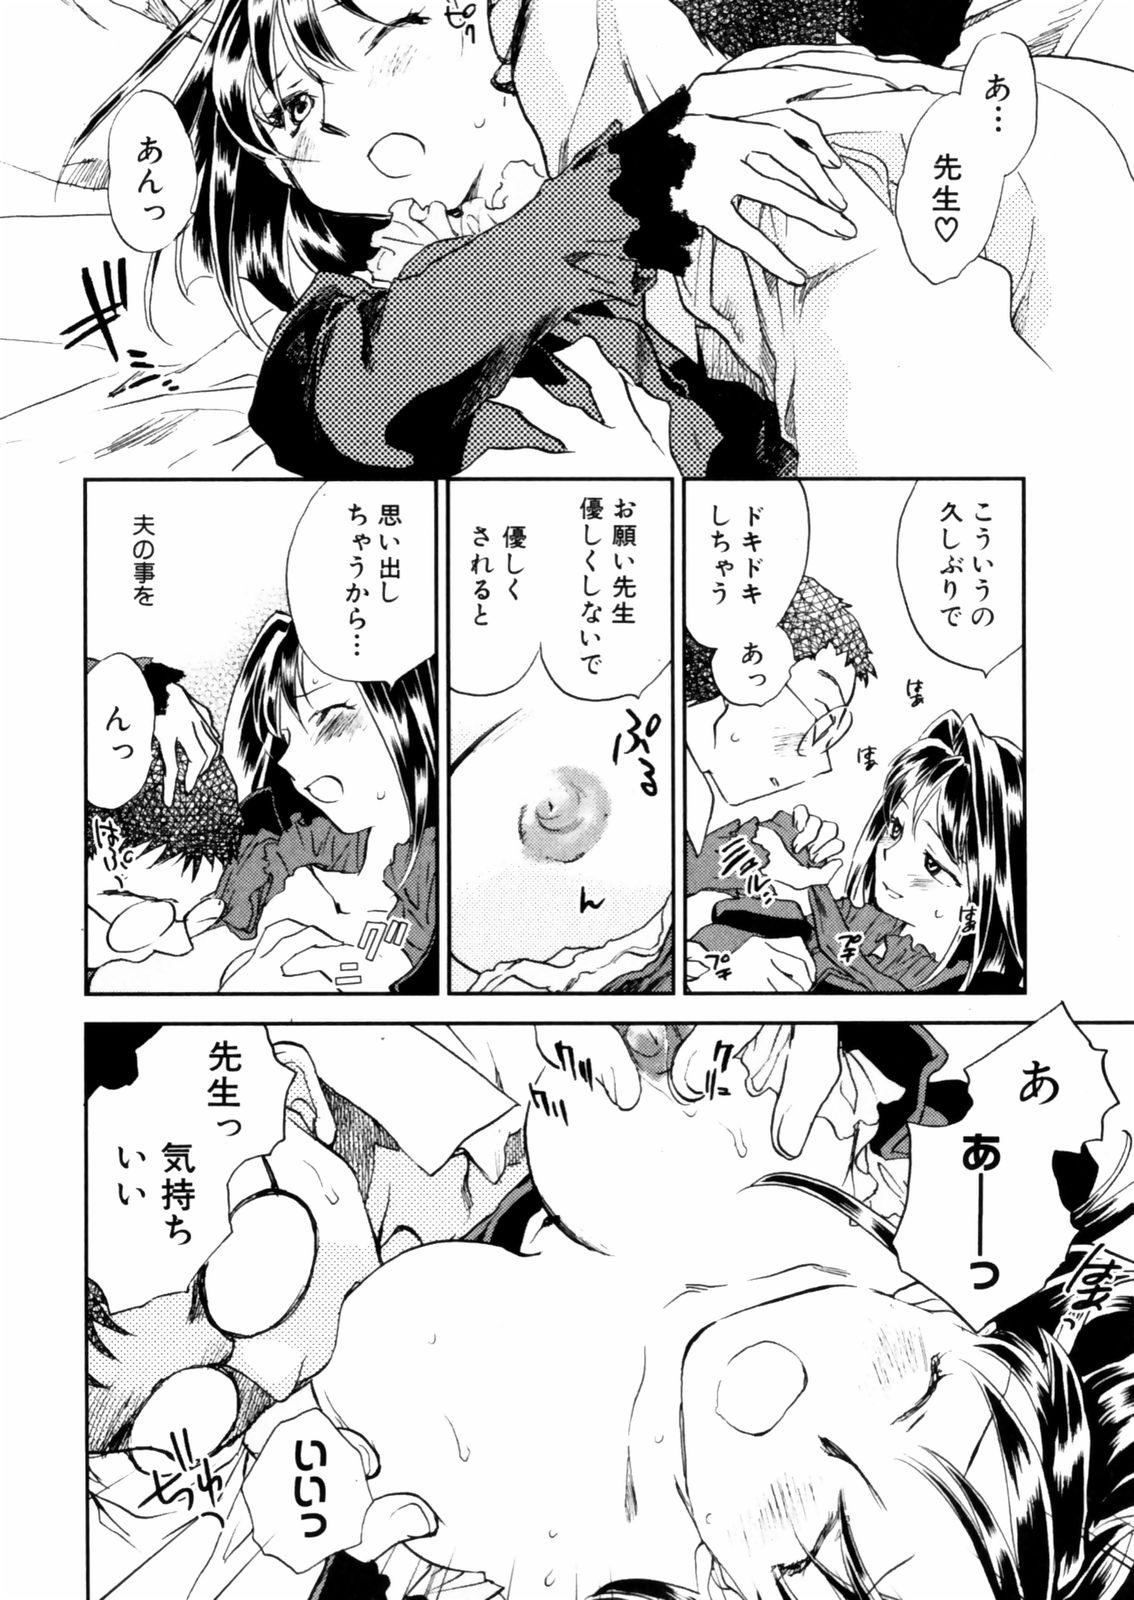 [Okano Ahiru] Hanasake ! Otome Juku (Otome Private Tutoring School) Vol.2 49